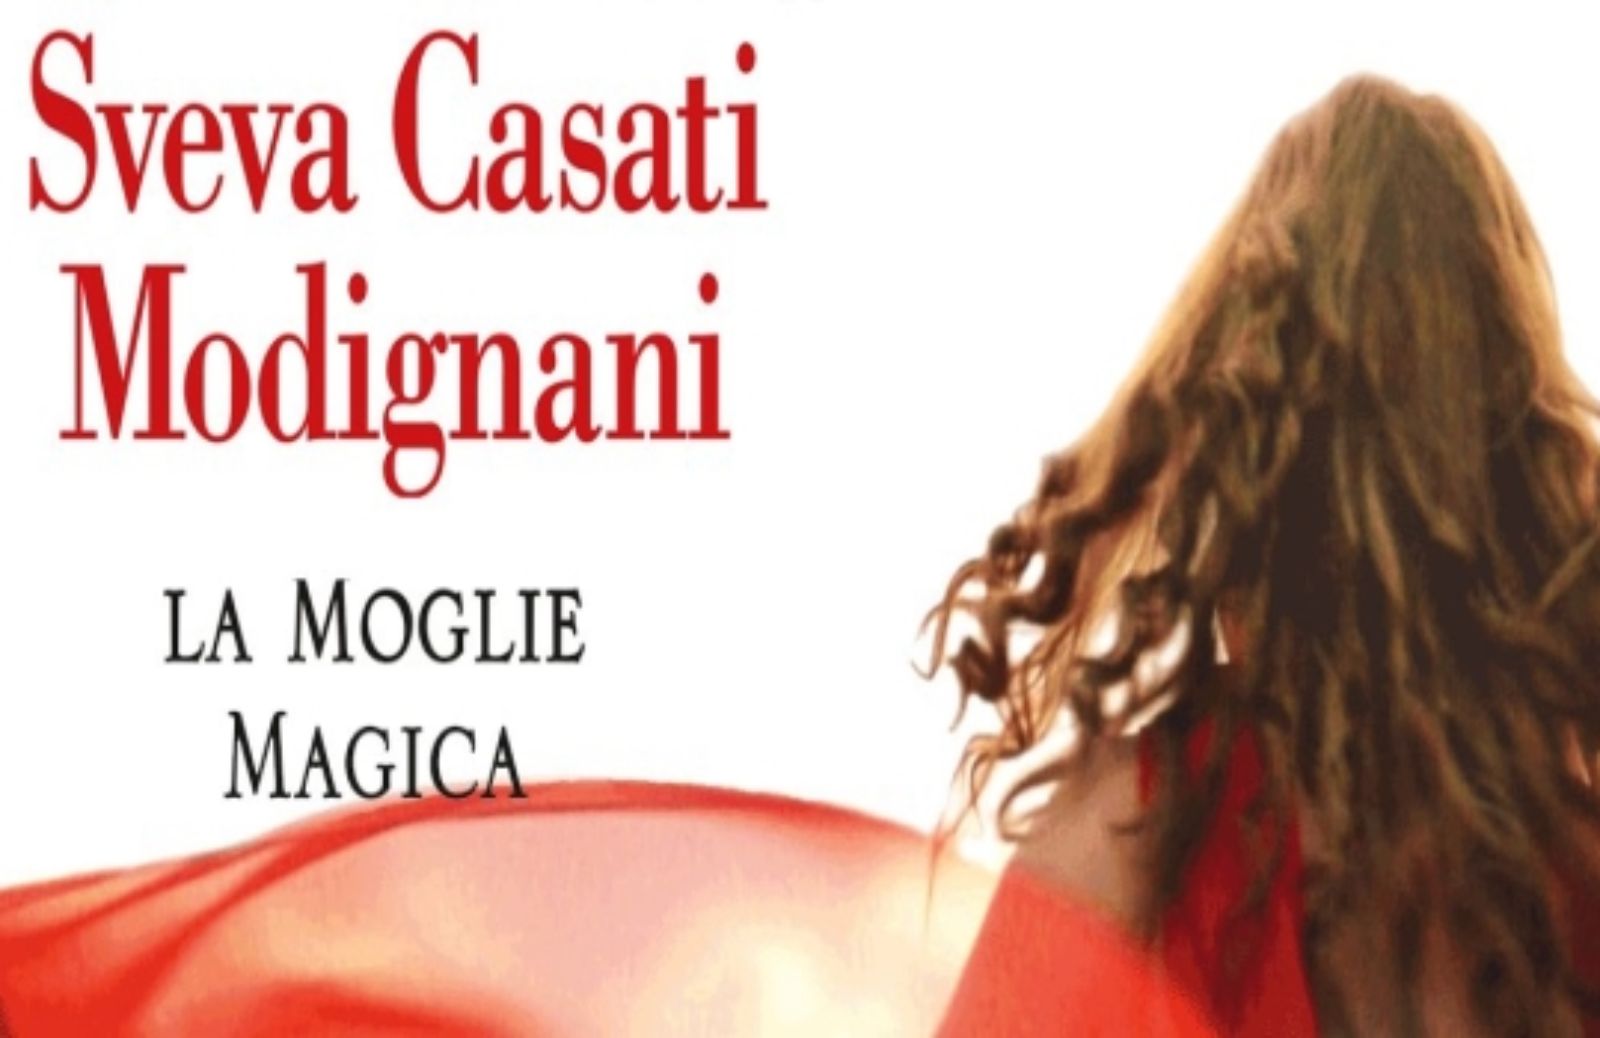 La moglie magica, l'ultimo romanzo di Sveva Casati Modignani